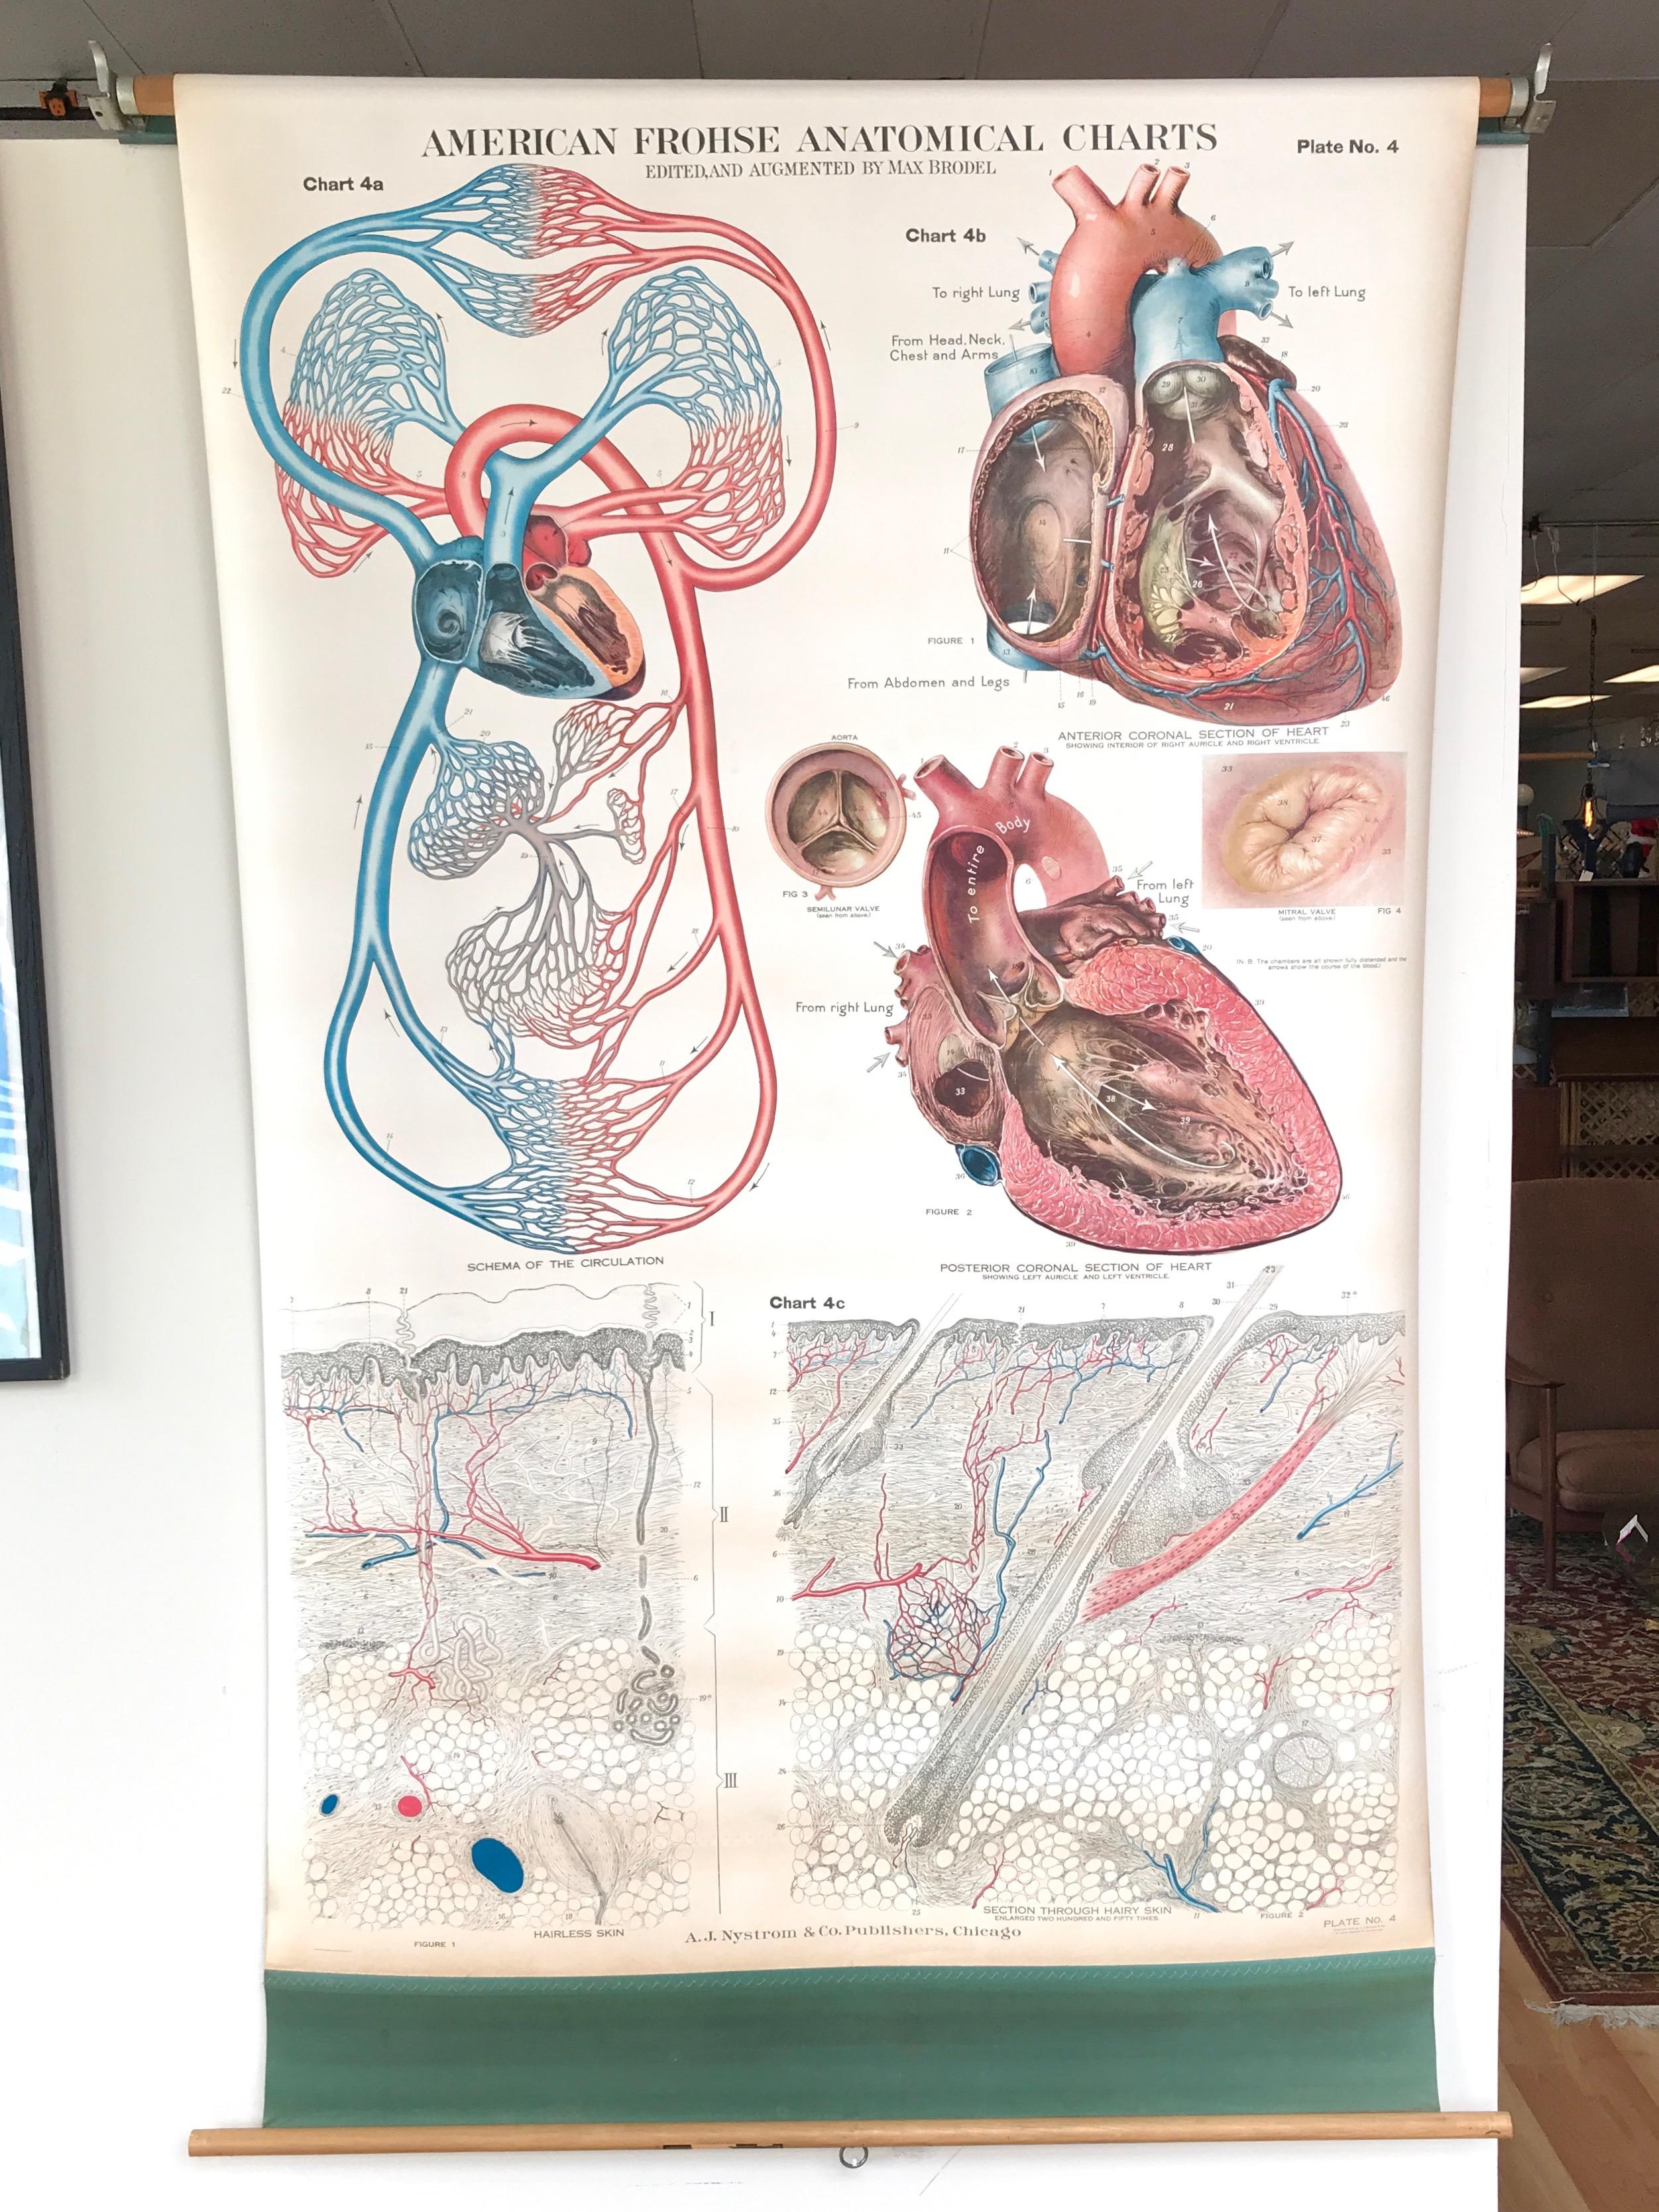 Ein beeindruckend großes und sorgfältig ausgeführtes anatomisches Schaubild von American Frohse, das das menschliche Kreislaufsystem darstellt, herausgegeben von A.J. Nystrom & Co., Chicago.

Tafel Nr. 4 einer einflussreichen Serie von großen,